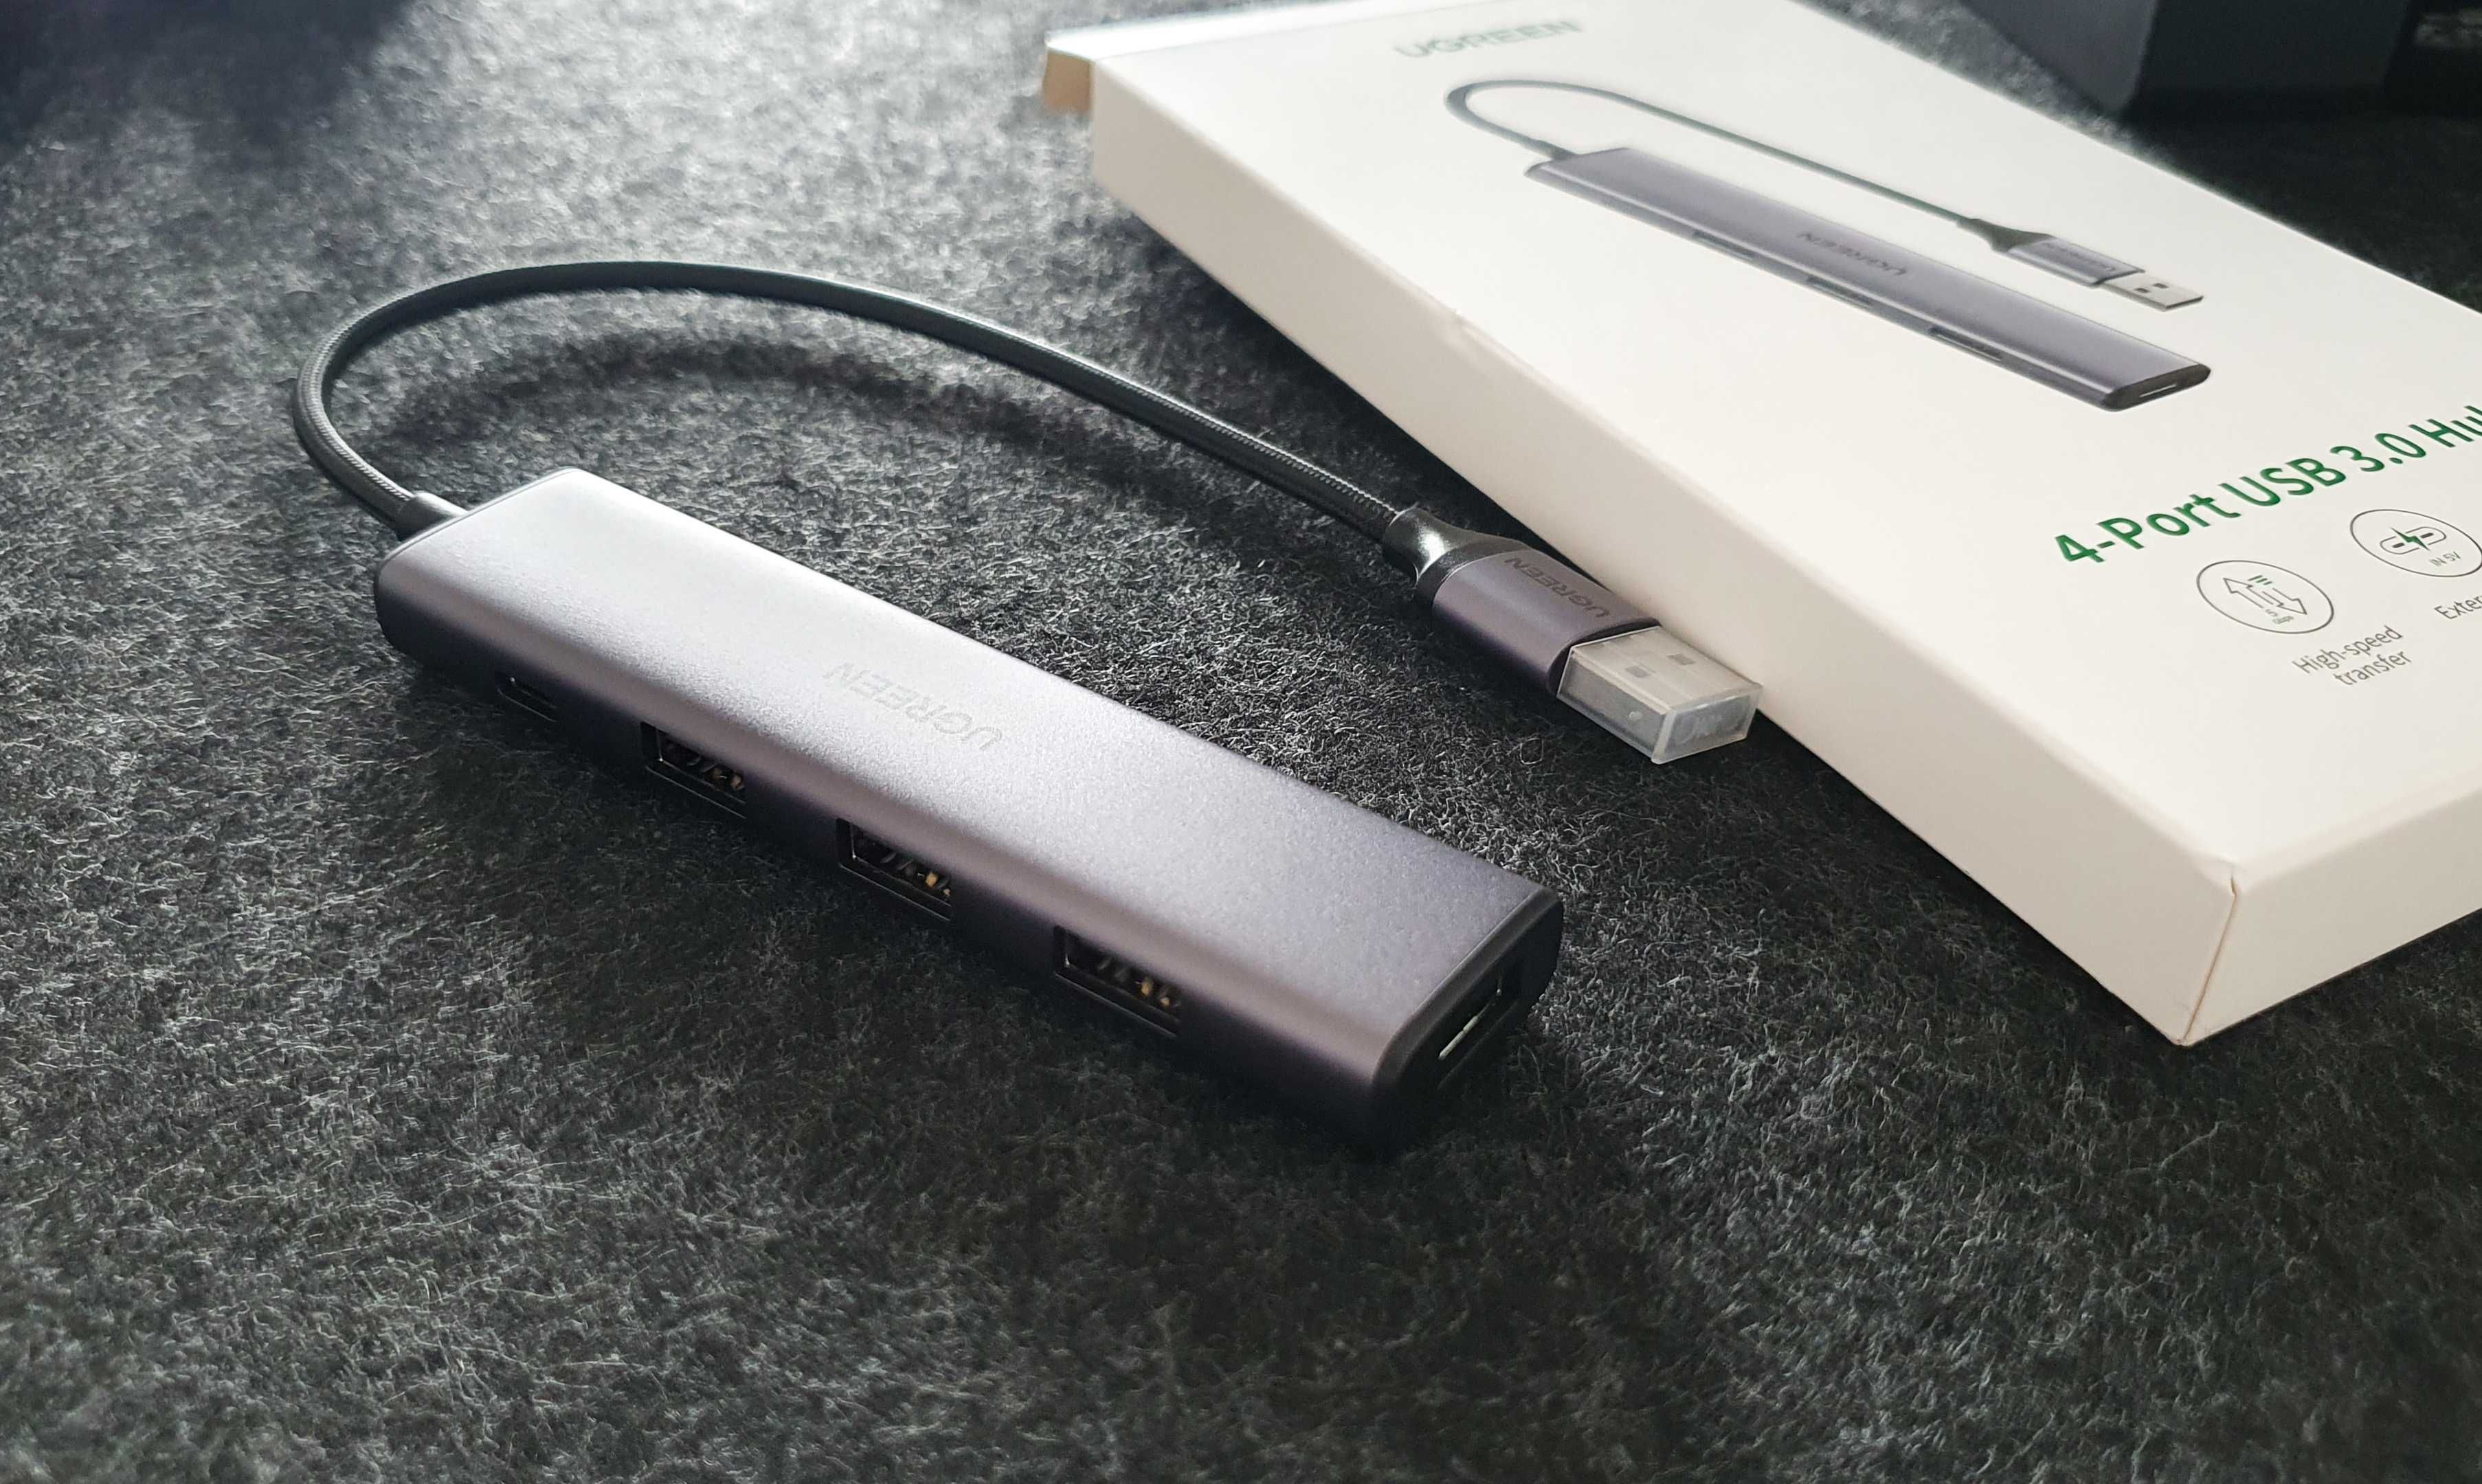 (НОВИЙ, гарантія Comfy) Хаб USB UGREEN CM473 USB 3.0 to 4-USB 3.0 Hub